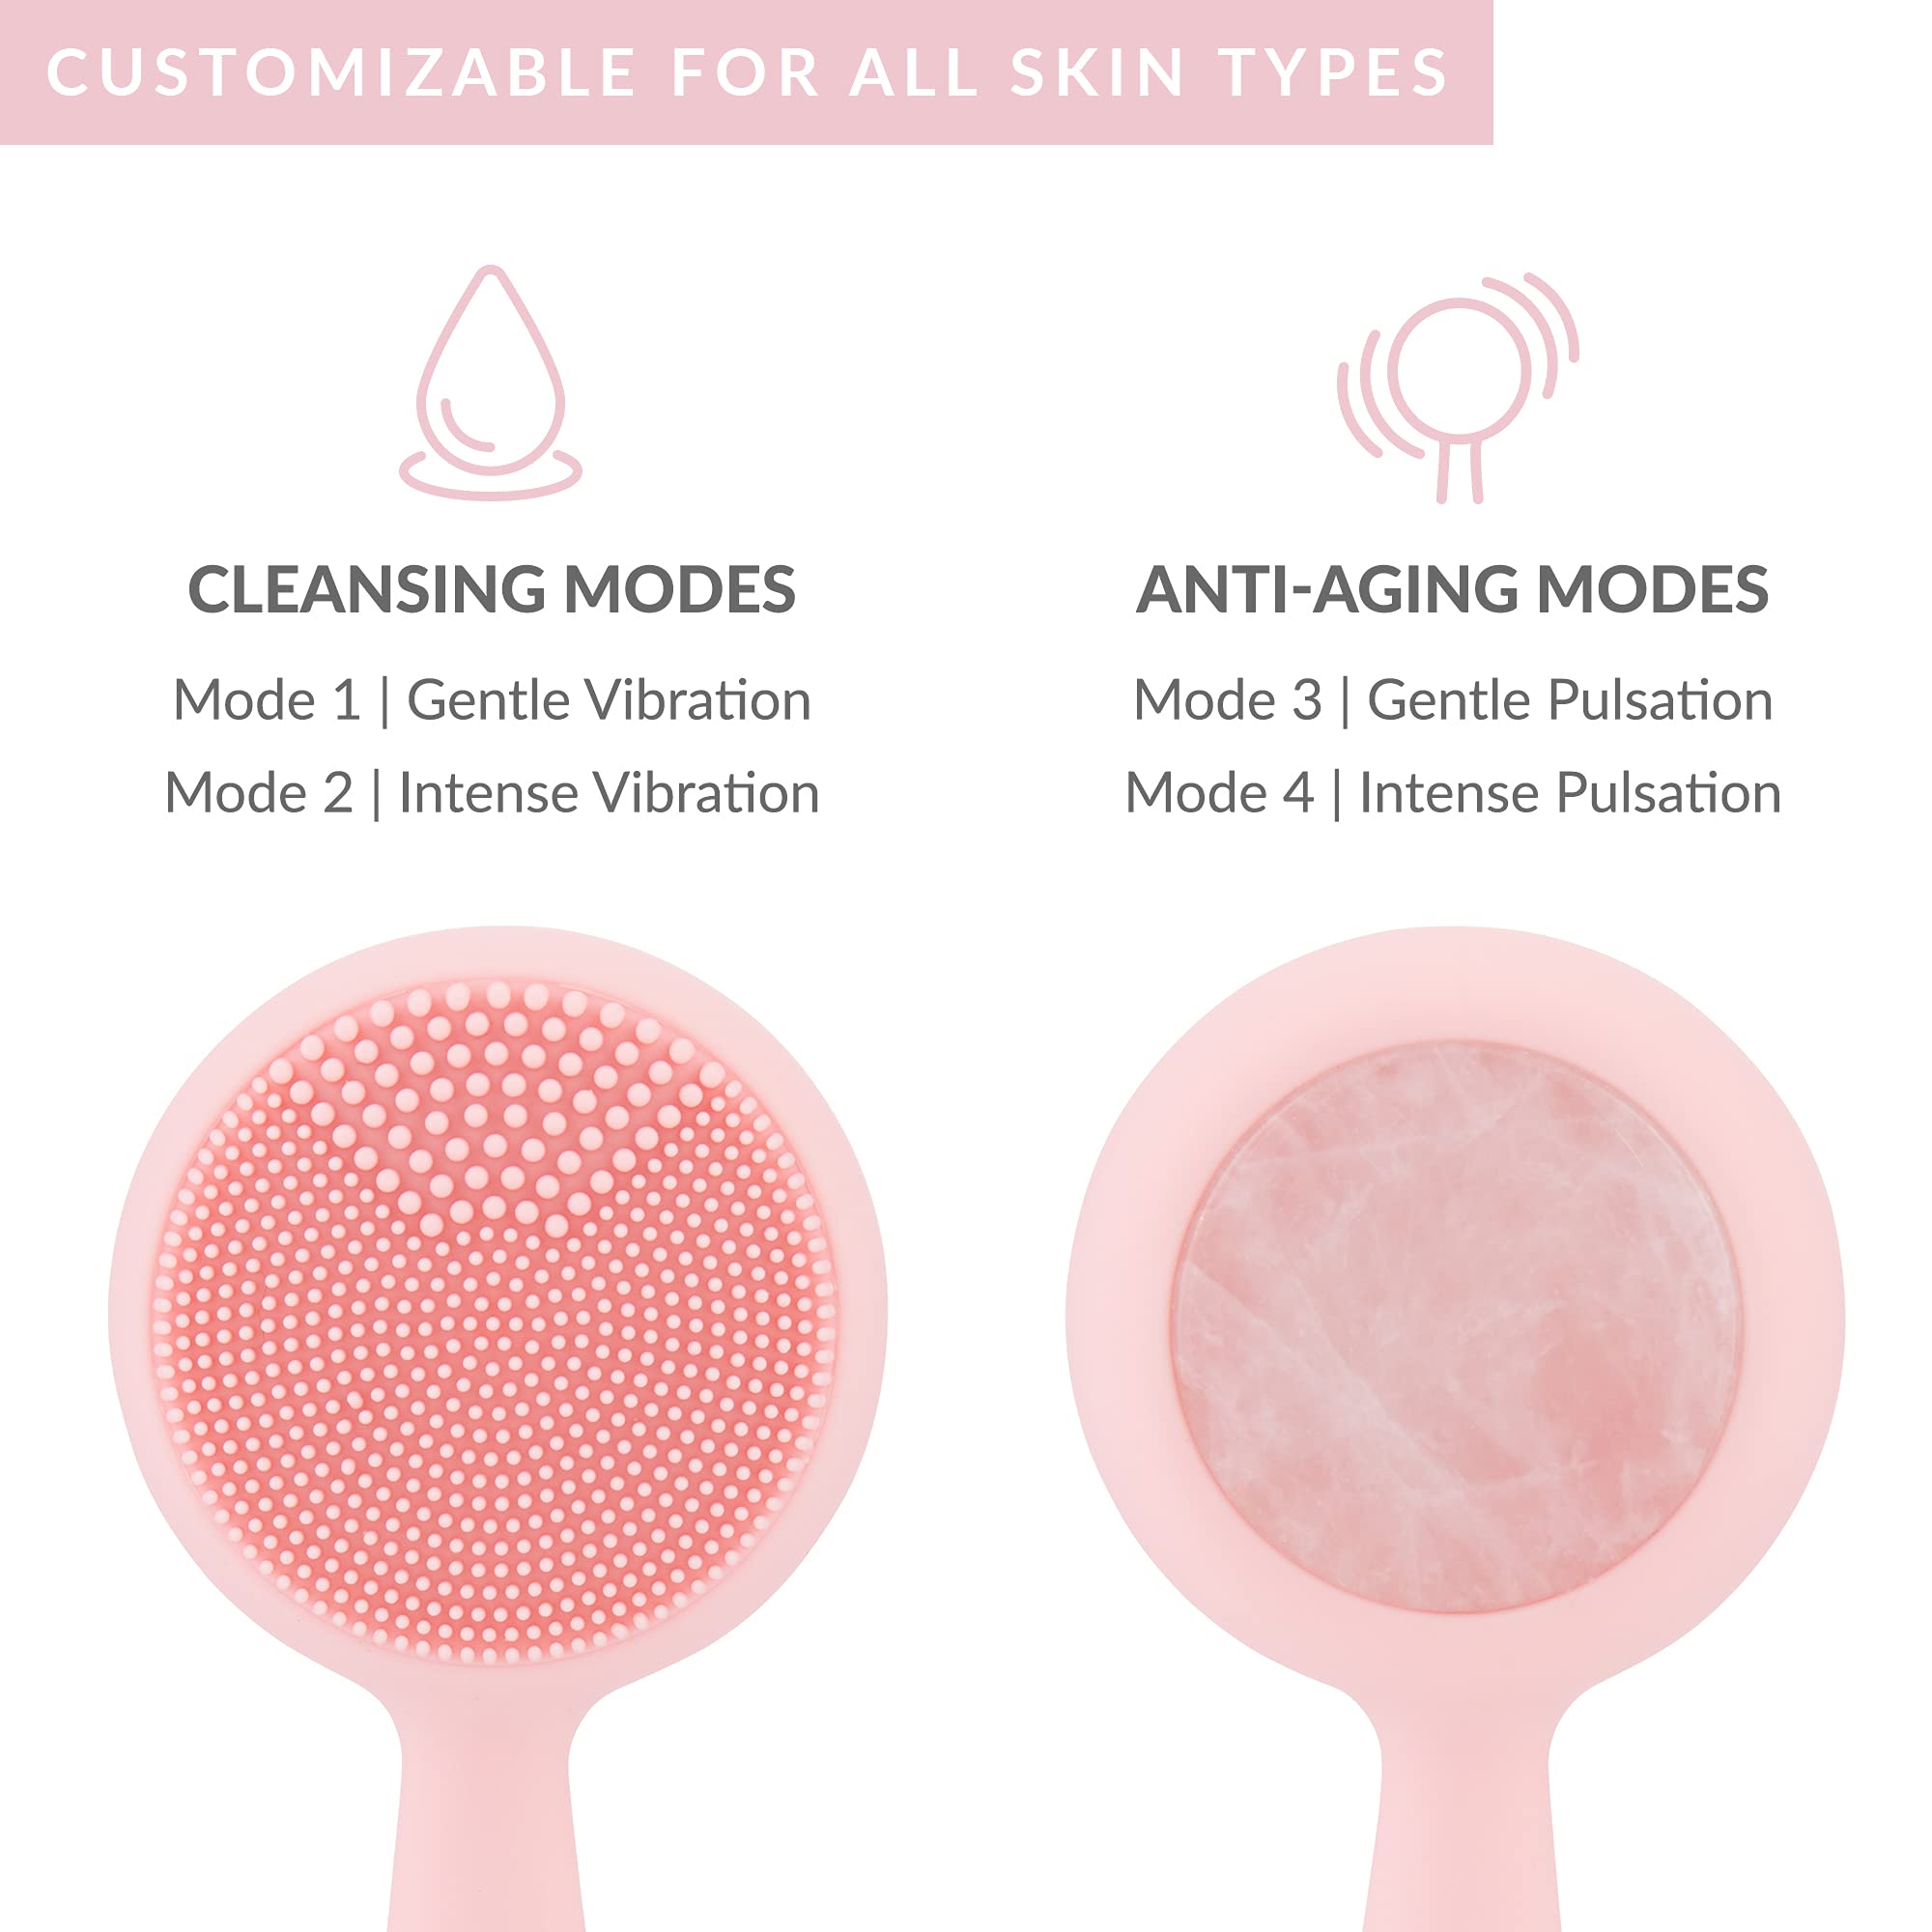 PMD Beauty Rose Quartz Pro Bundle Personal Microderm Pro & Clean Pro RQ Smart Skincare Devices (7521229996270)